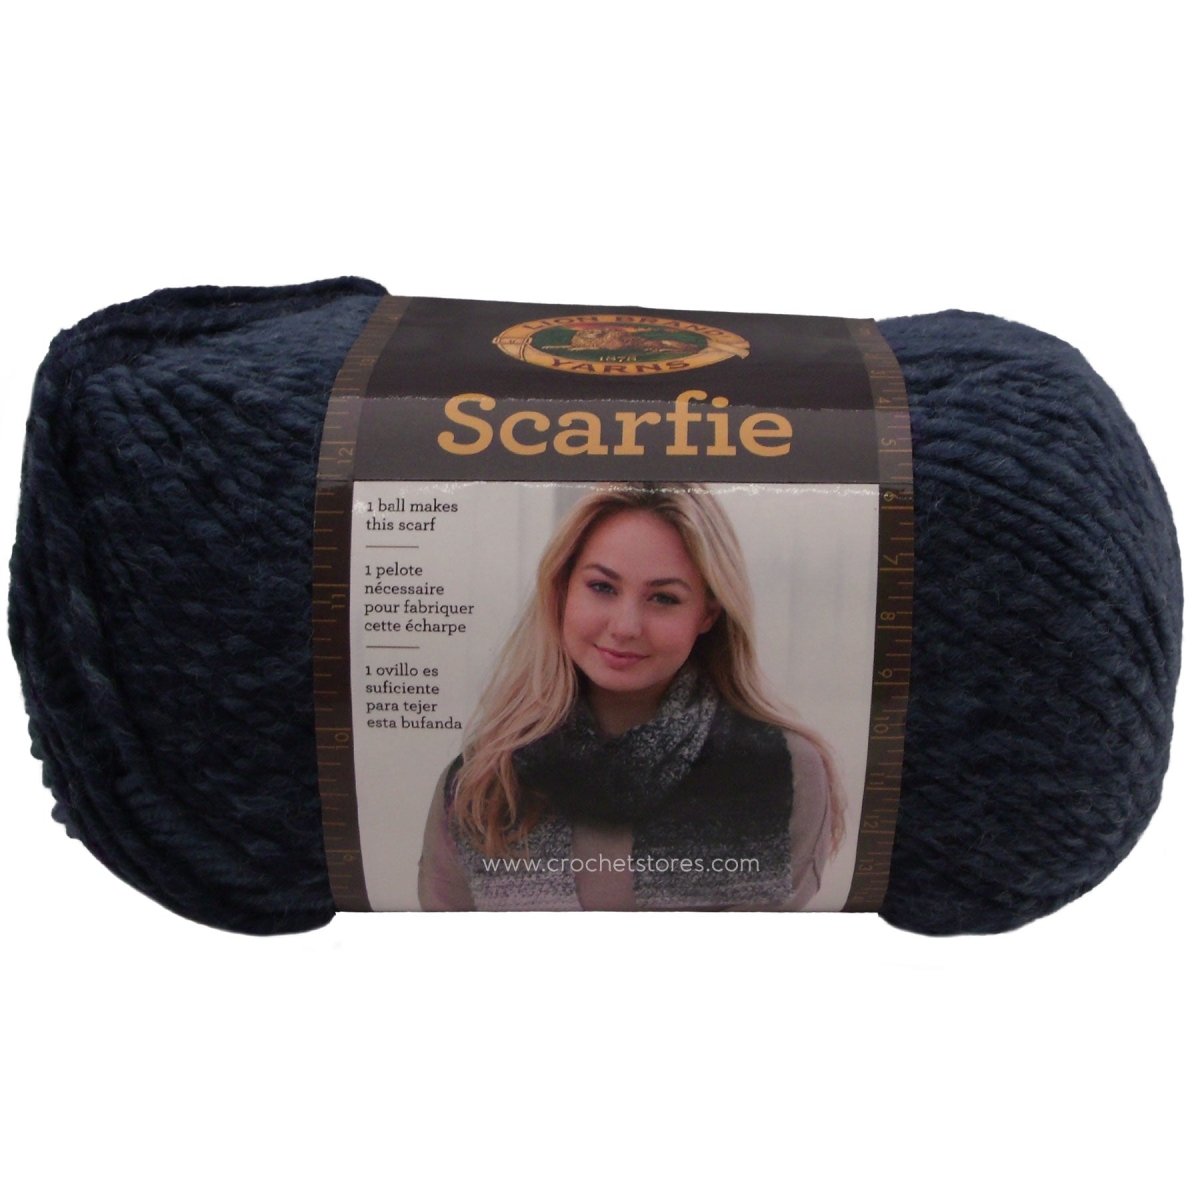 SCARFIE - Crochetstores826-204